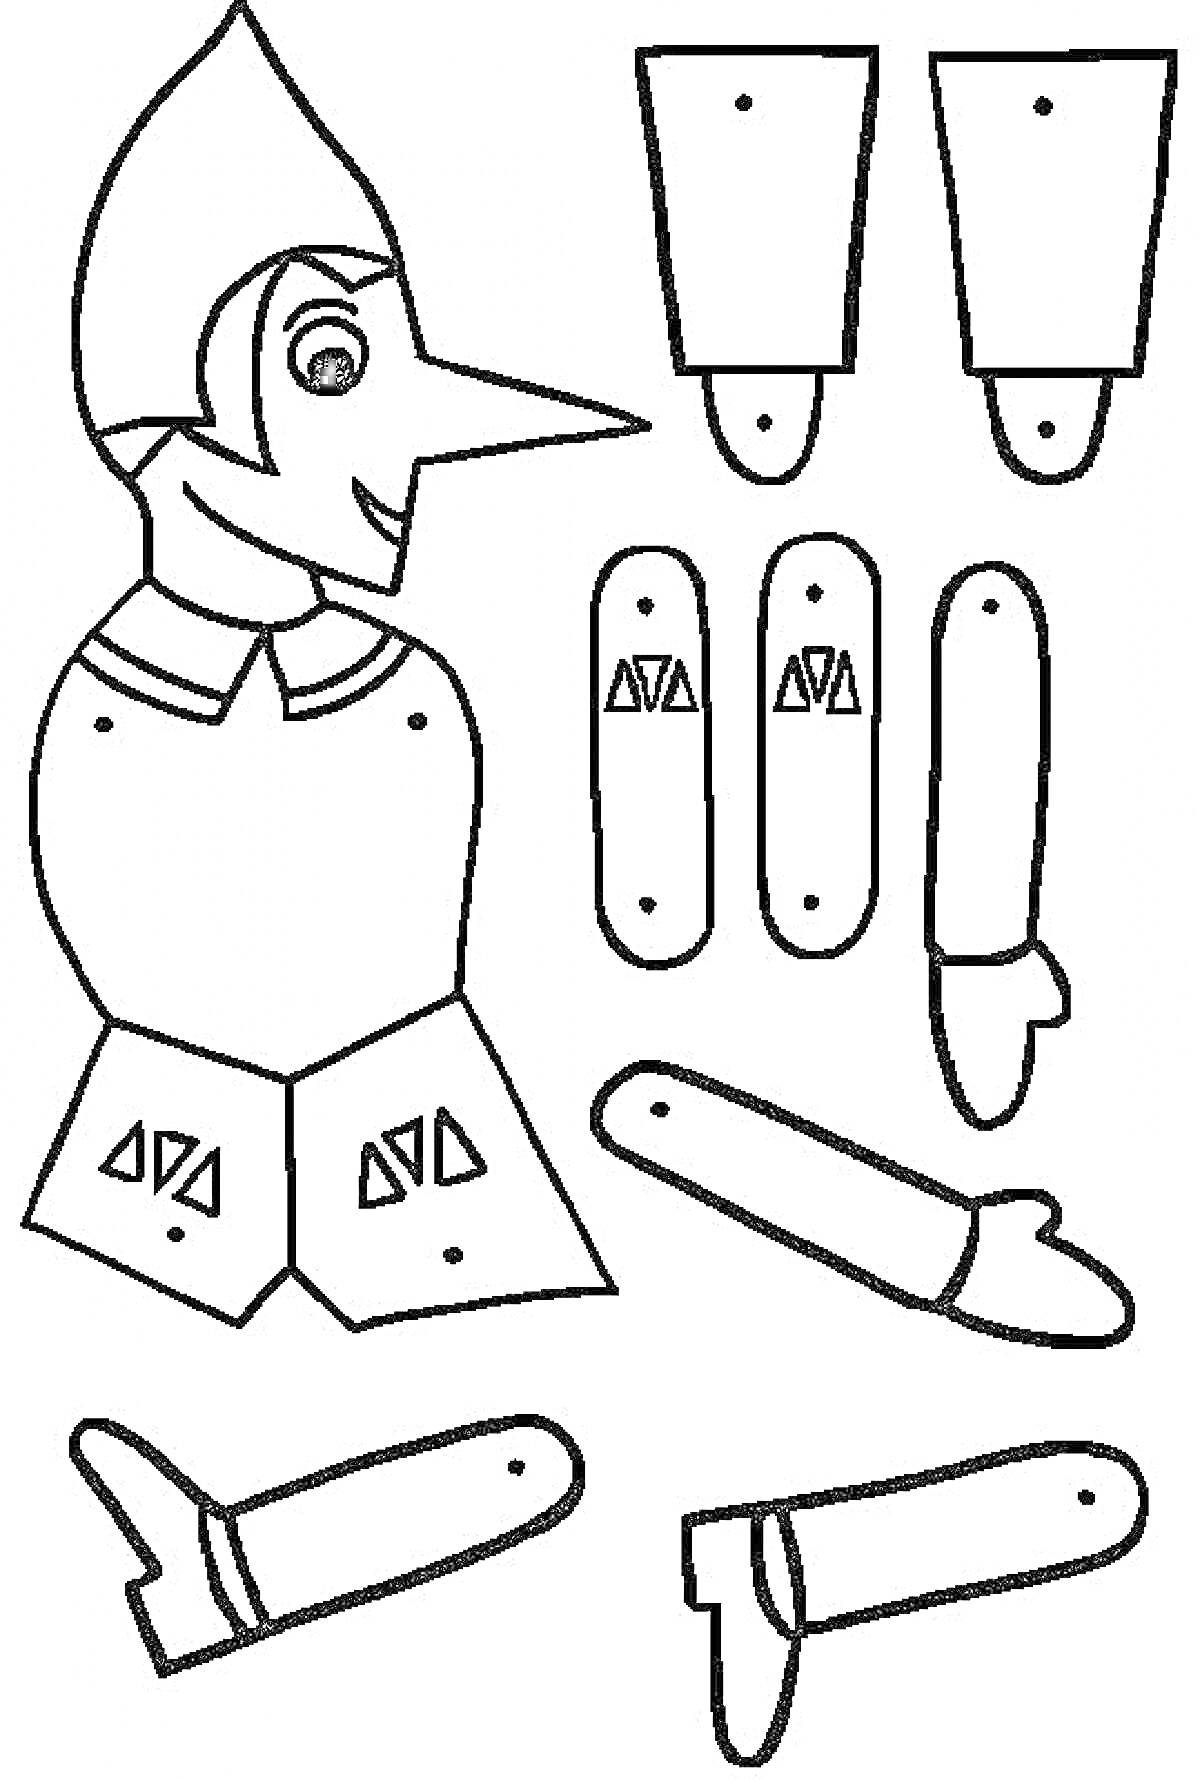 Раскраска Марионетка с головой пиноккио и отдельными элементами туловища, рук и ног